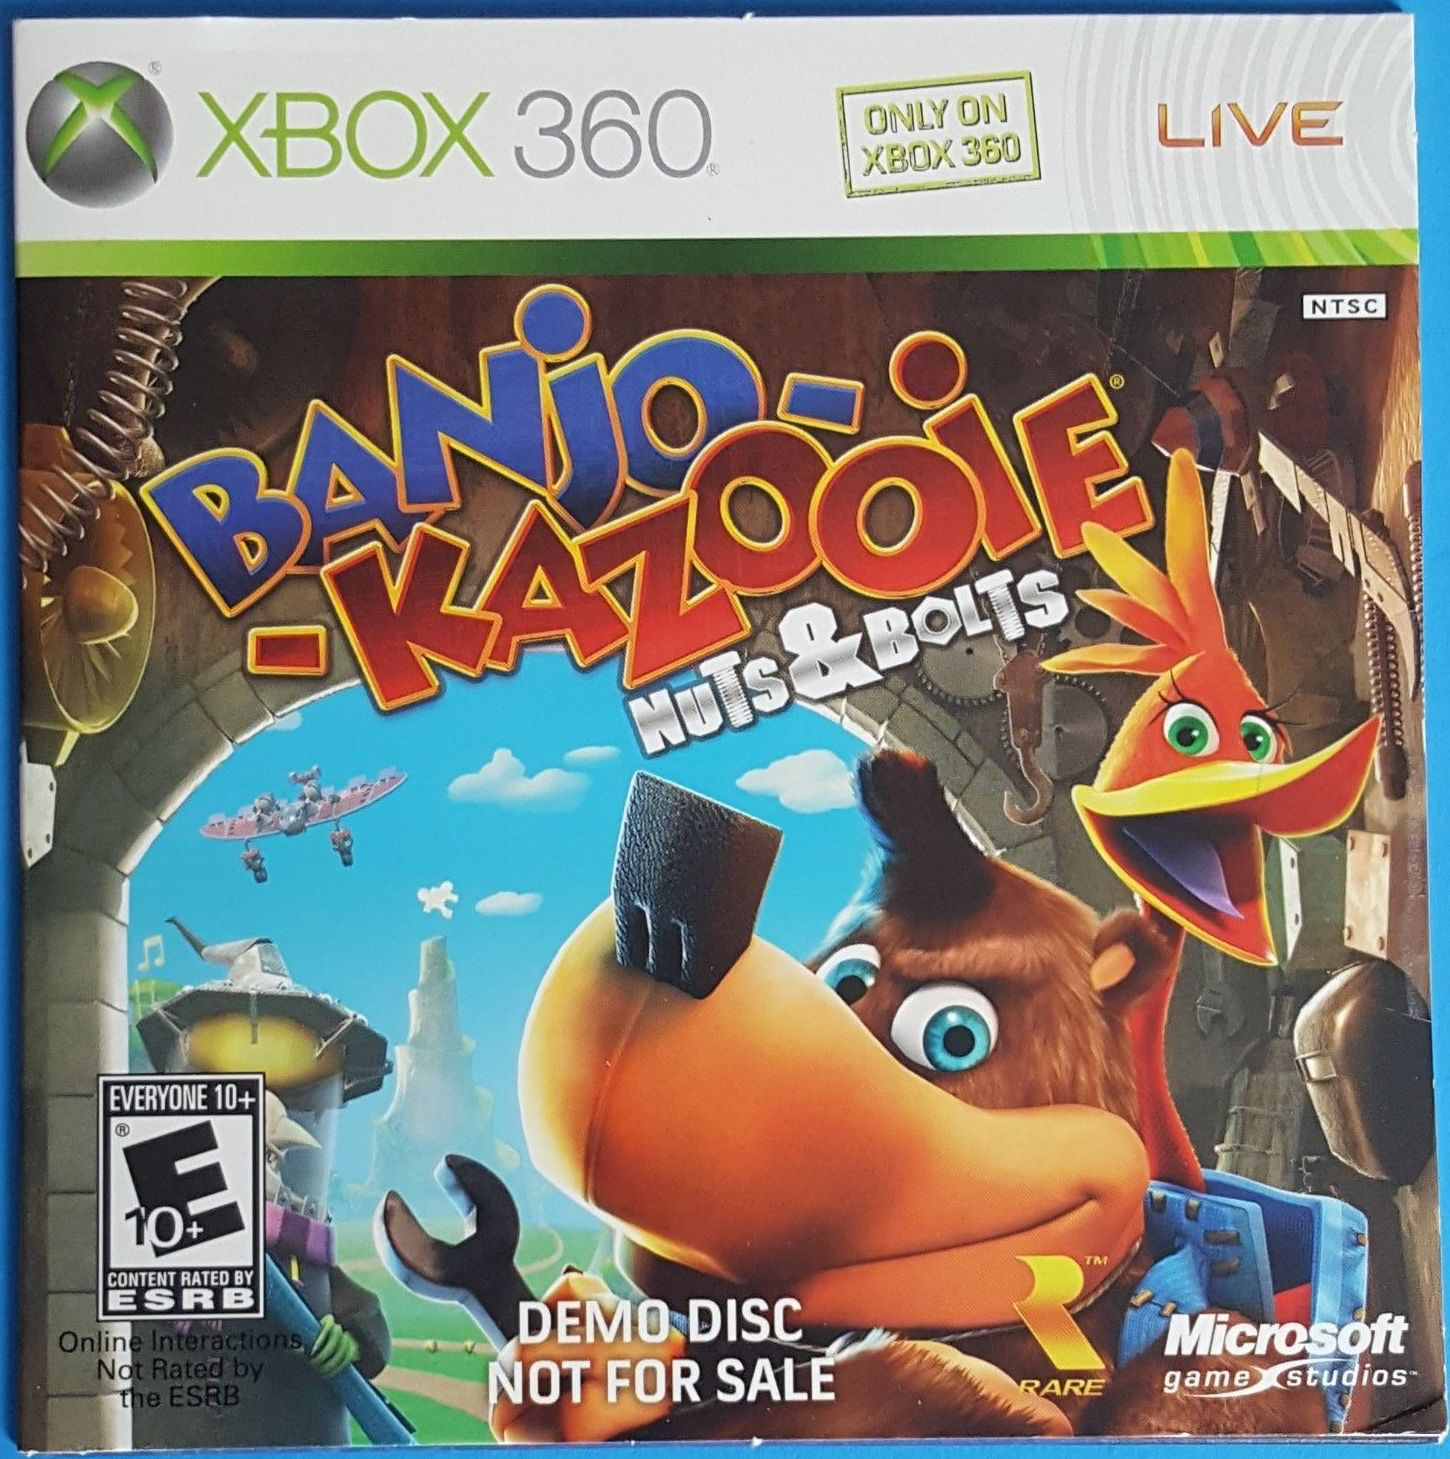 Banjo-Kazooie: Nuts & Bolts (Microsoft Xbox 360, 2008) Video Game